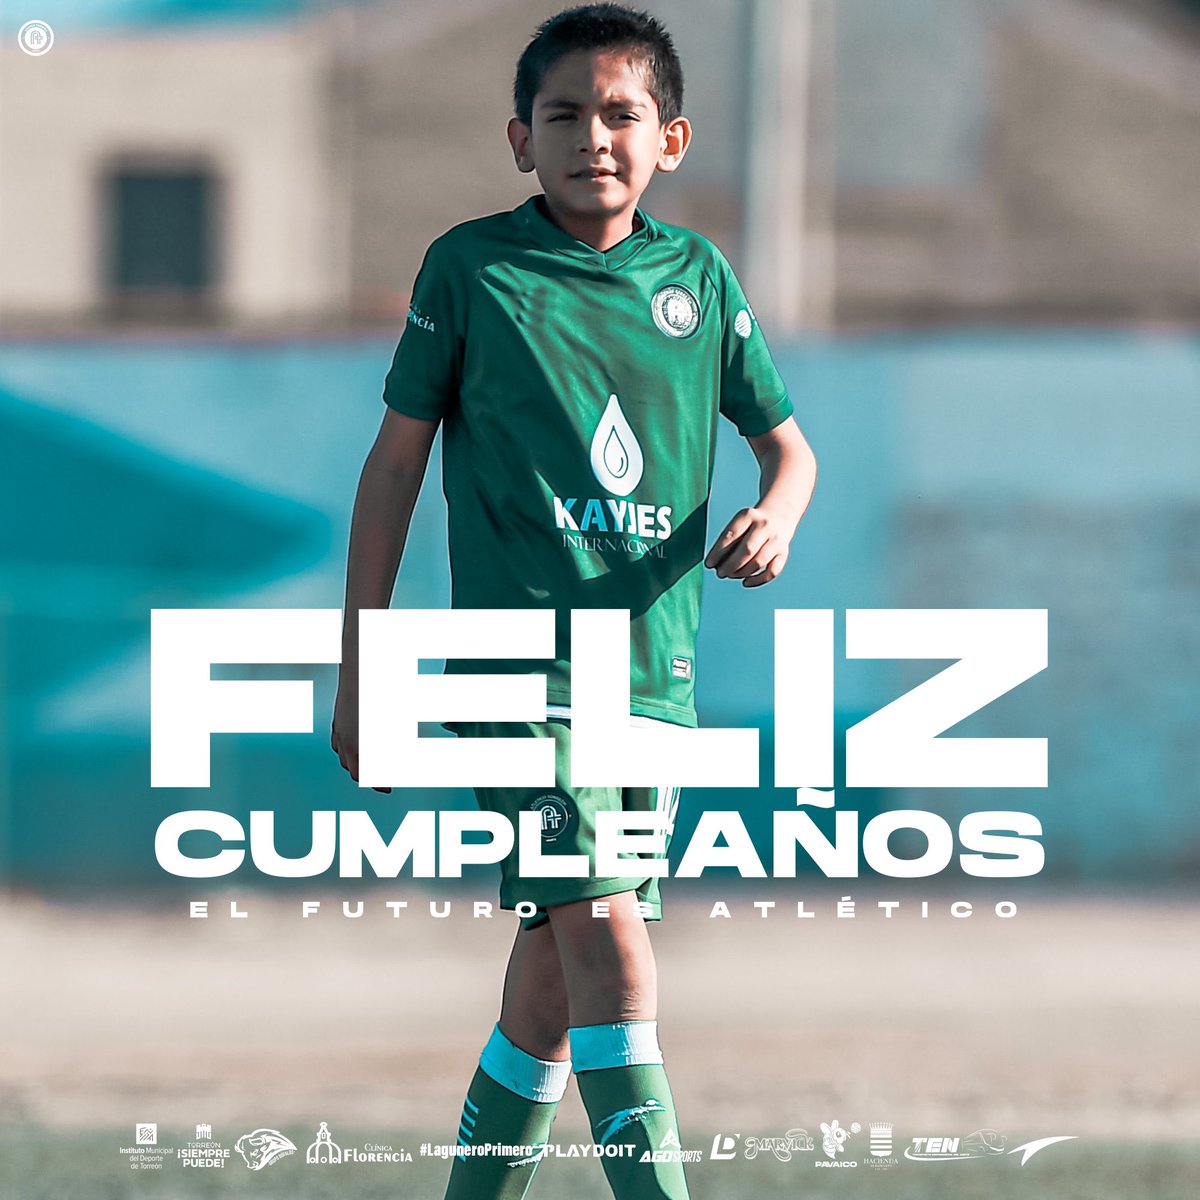 🎉 | Enviamos un abrazo y felicitación a nuestro jugador Rogelio Lastra, de nuestra categoría sub 9, que el día de hoy está festejando su cumpleaños. ⚪️🟢 | #NacimosParaSuperarloTodo #ElFuturoEsAtletico #LaguneroPrimero